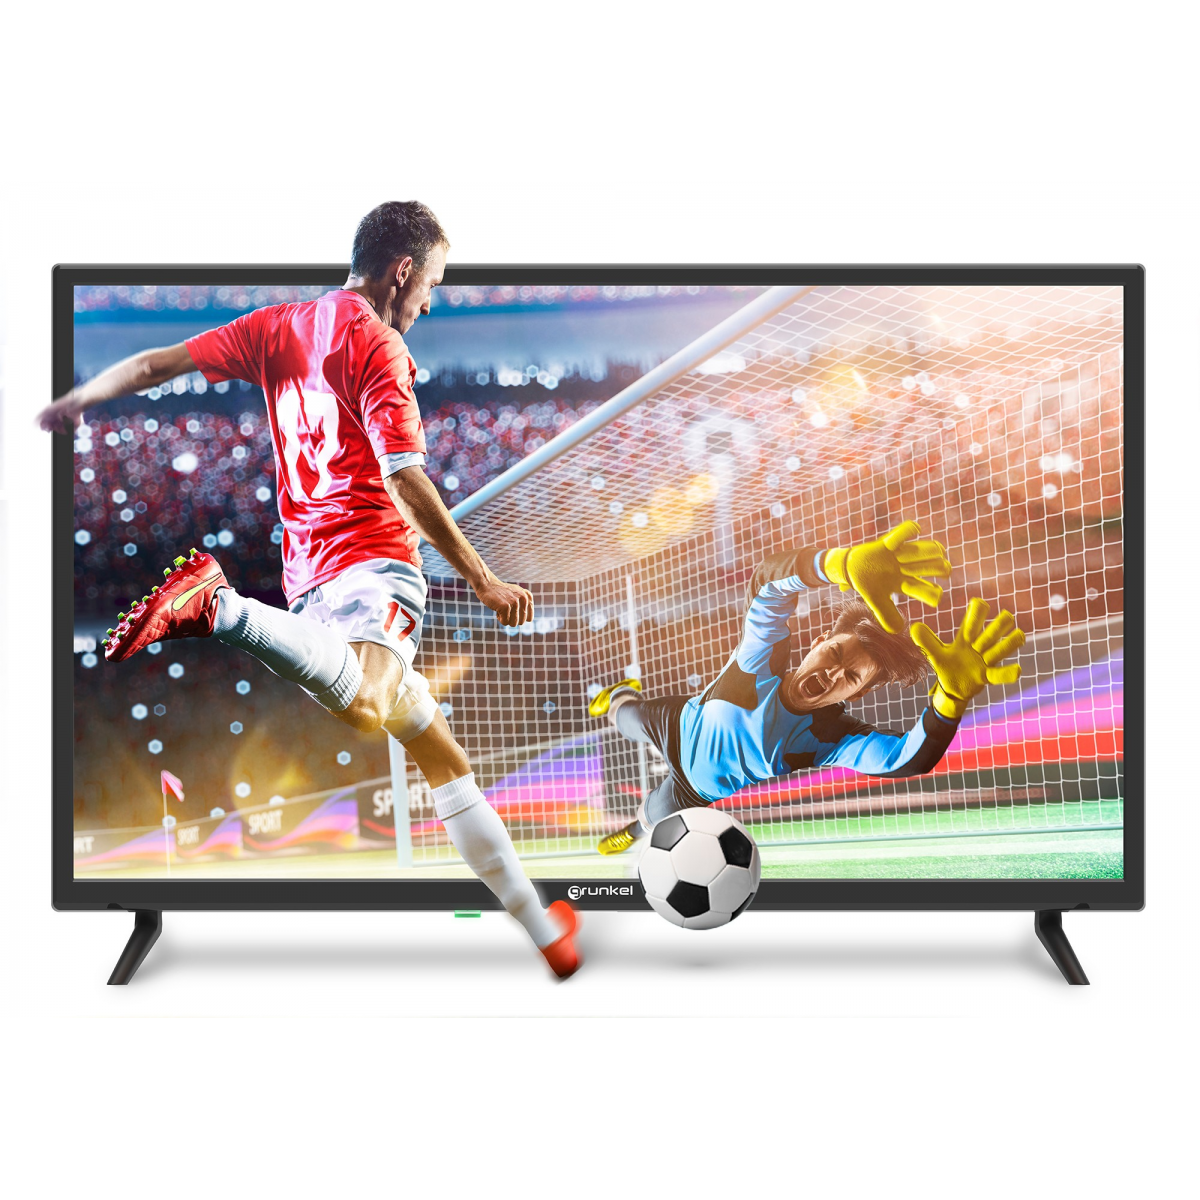 Grunkel - Televisor 32 Pulgadas Smart TV con Google Chromecast - LED-322GOO  Gaming y Netflix, Disney+ y Otras apps. Panel HD Ready, Wi-Fi Bajo Consumo.  Auto-Apagado : : Electrónica